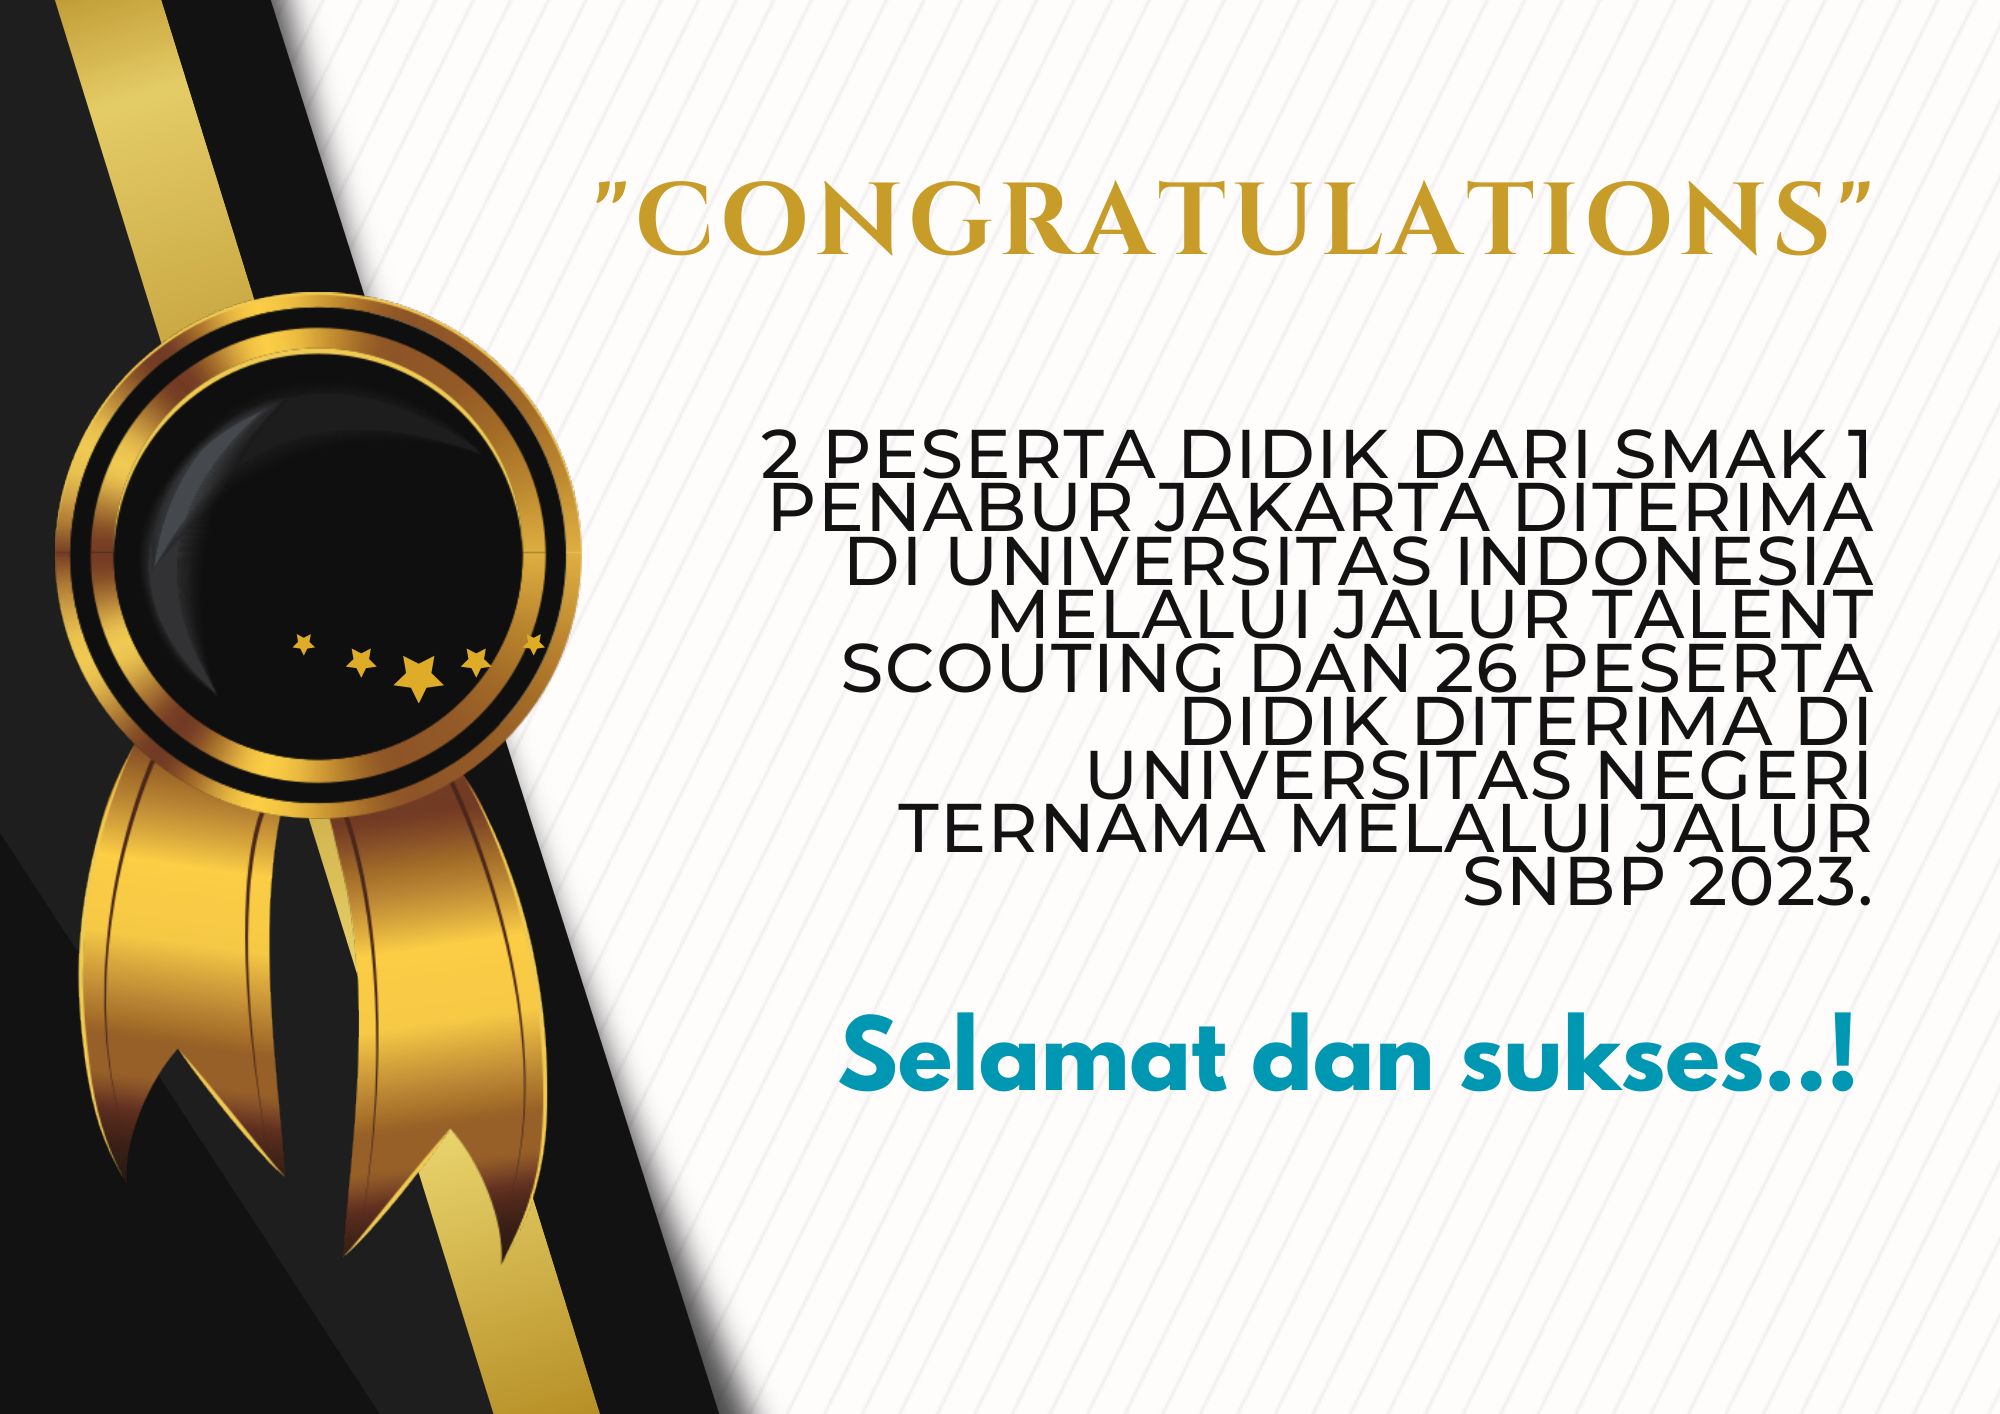 Prestasi 2 peserta didik SMAK 1 PENABUR JAKARTA diterima di Universitas Indonesia melalui jalur Talent Scouting dan 2 peserta didik diterima di Universitas negeri ternama melalui Jalur SNBP 2023